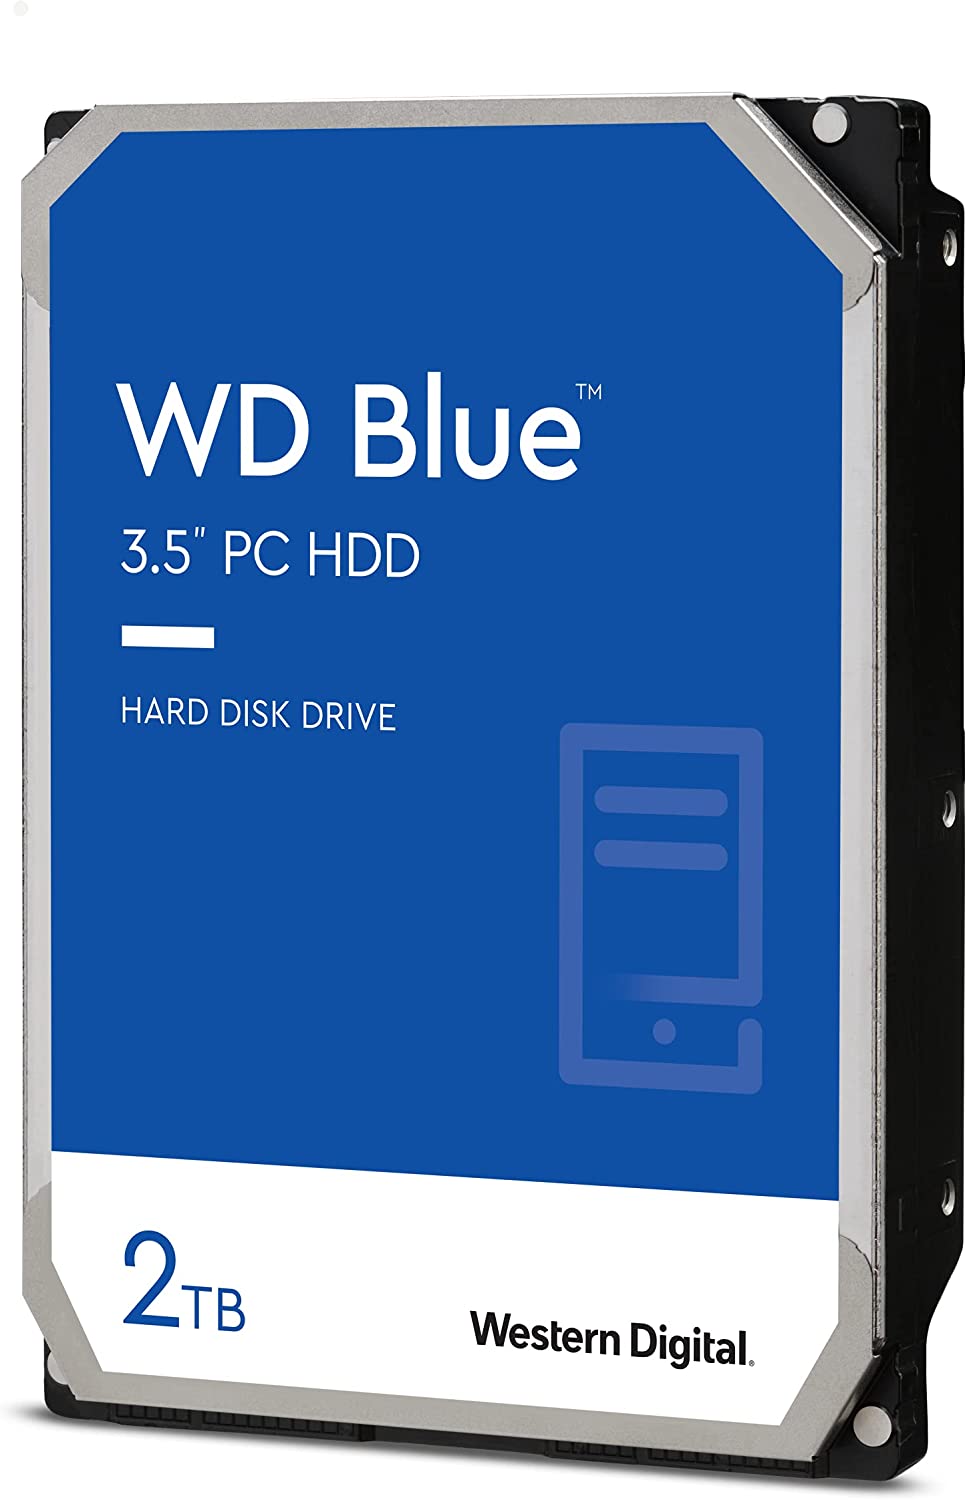 Western Digital 2TB WD Blue PC Internal Hard Drive - 7200 RPM Class, SATA 6 Gb/s, 256 MB Cache, 3.5" - WD20EZBX 2TB 7200 RPM Hard Drive